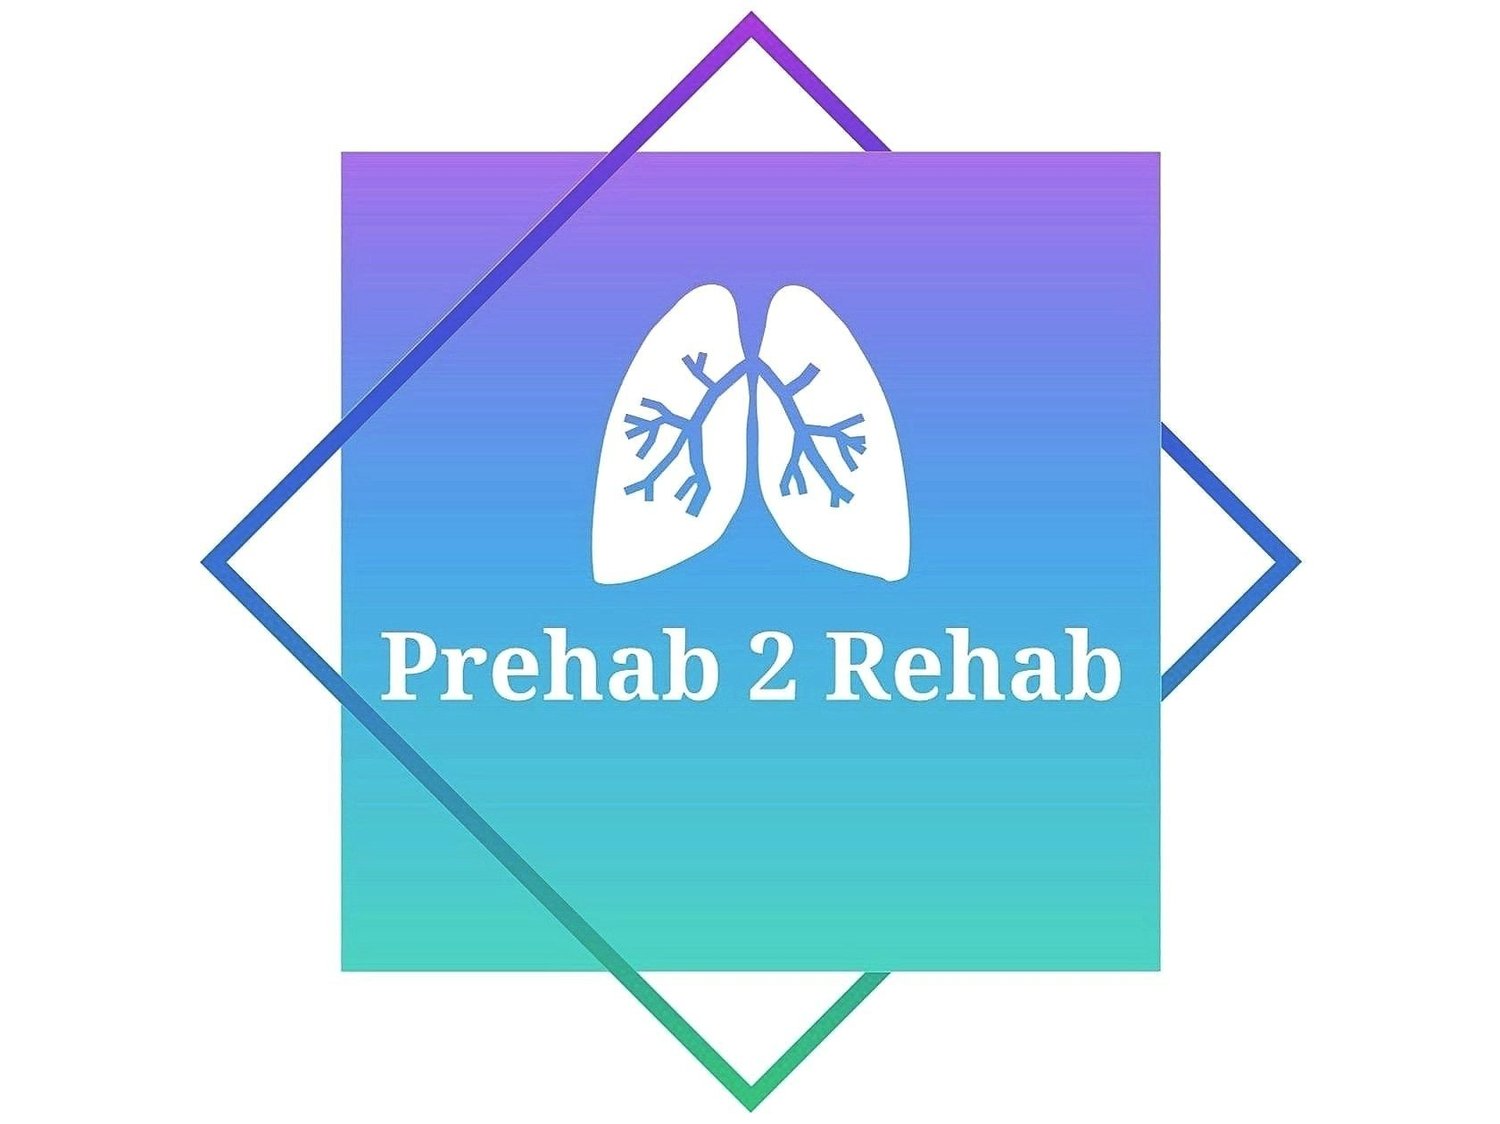 Prehab 2 Rehab